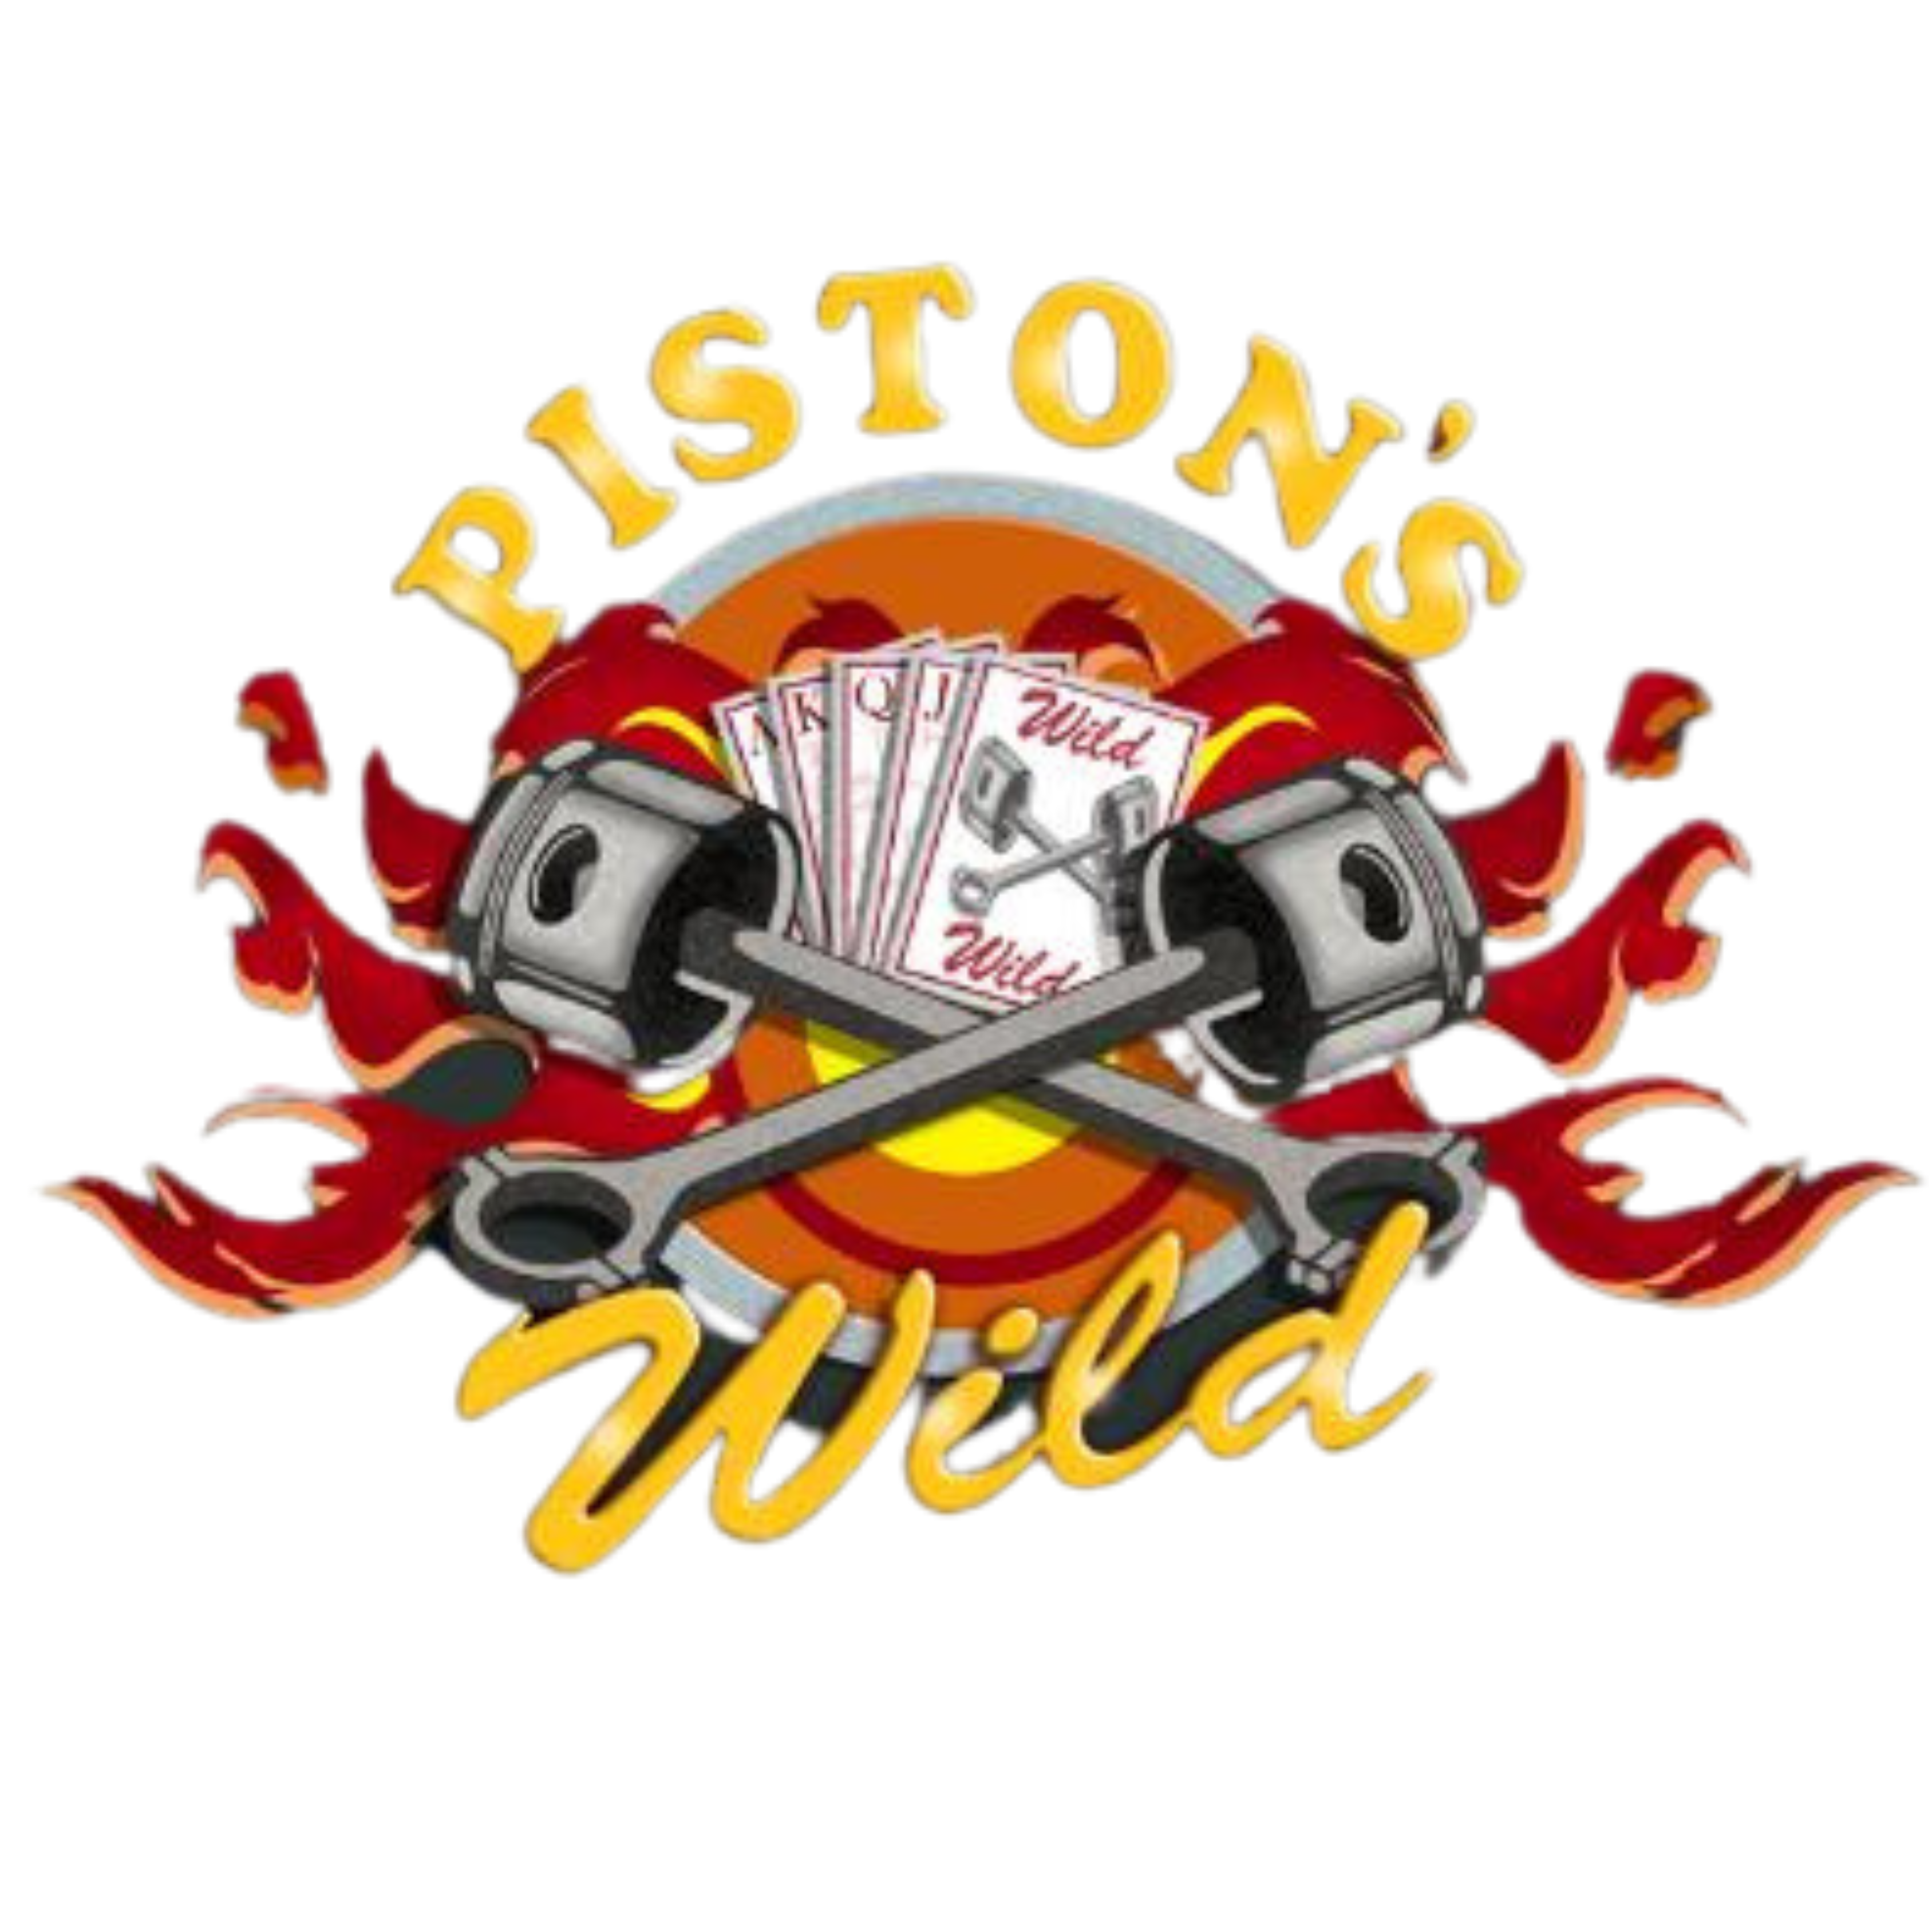 Piston's Wild